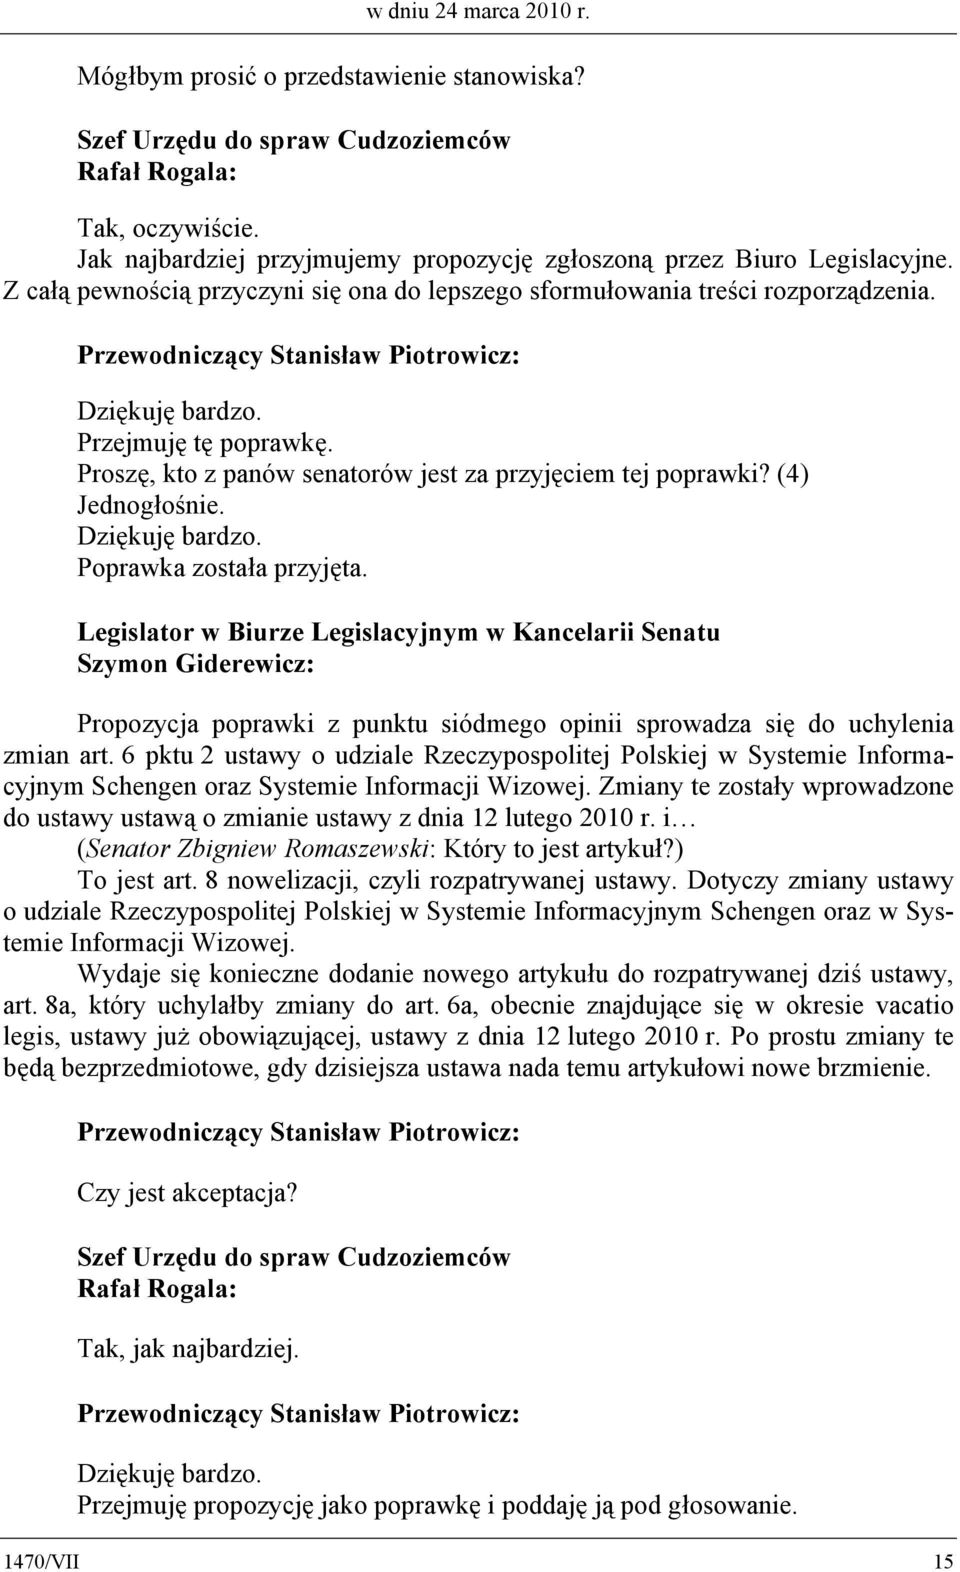 Poprawka została przyjęta. Legislator w Biurze Legislacyjnym w Kancelarii Senatu Szymon Giderewicz: Propozycja poprawki z punktu siódmego opinii sprowadza się do uchylenia zmian art.